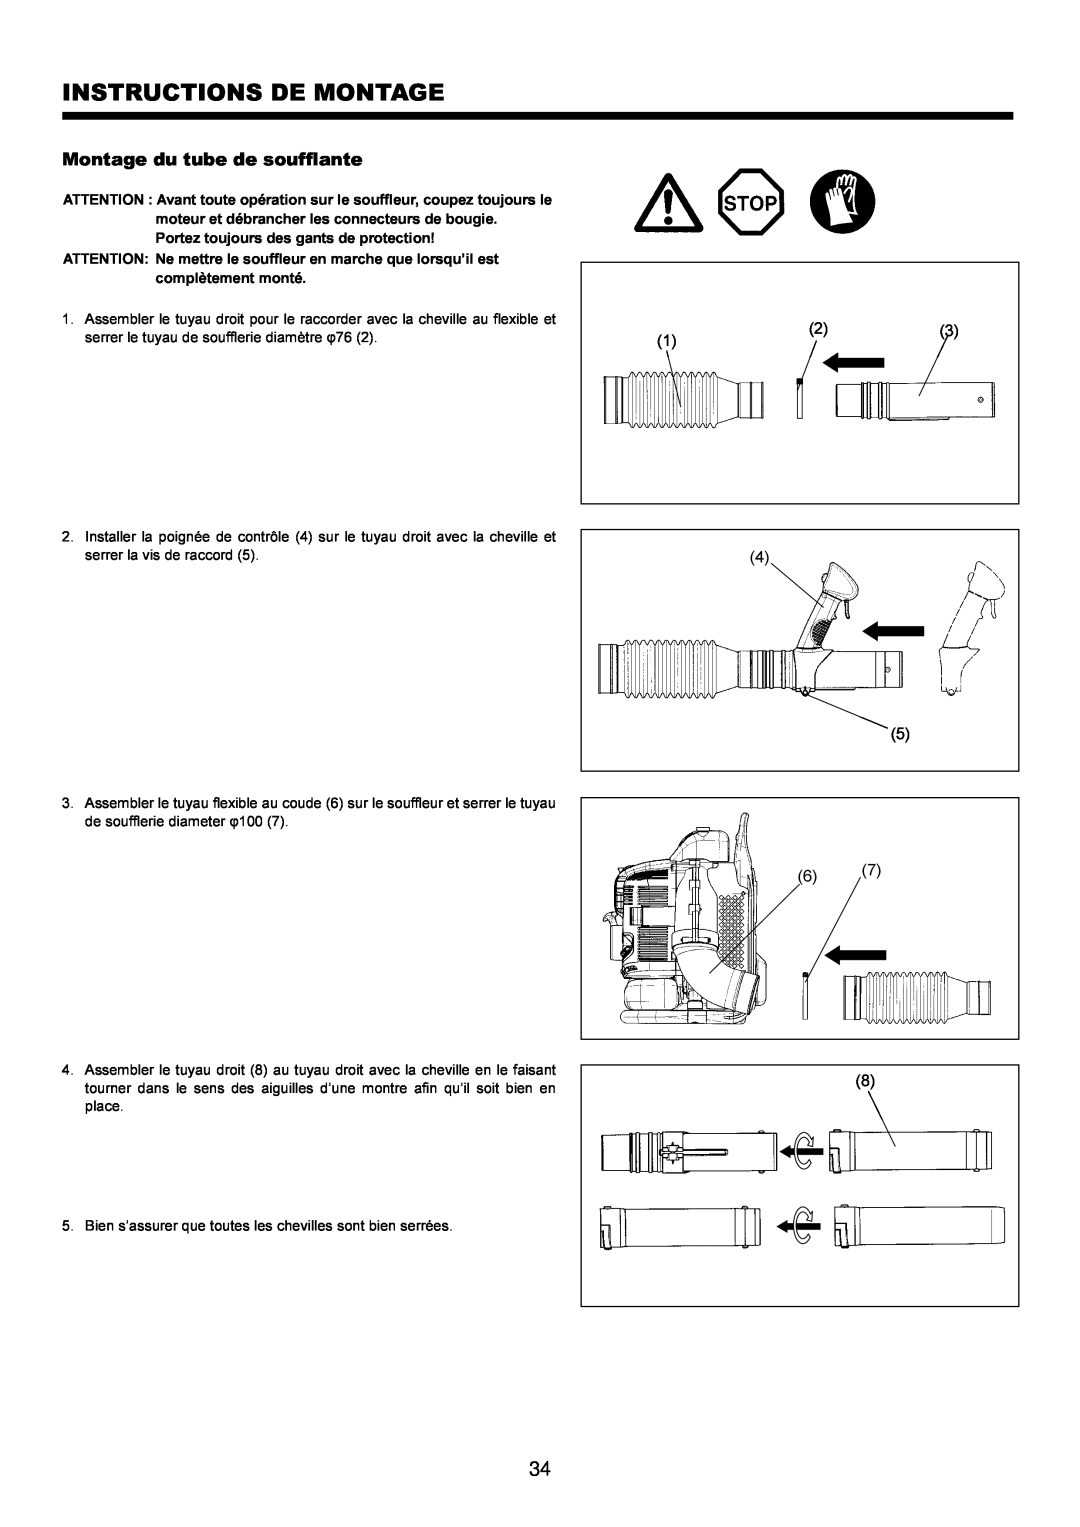 Makita BBX7600CA instruction manual Instructions De Montage, Montage du tube de soufflante 